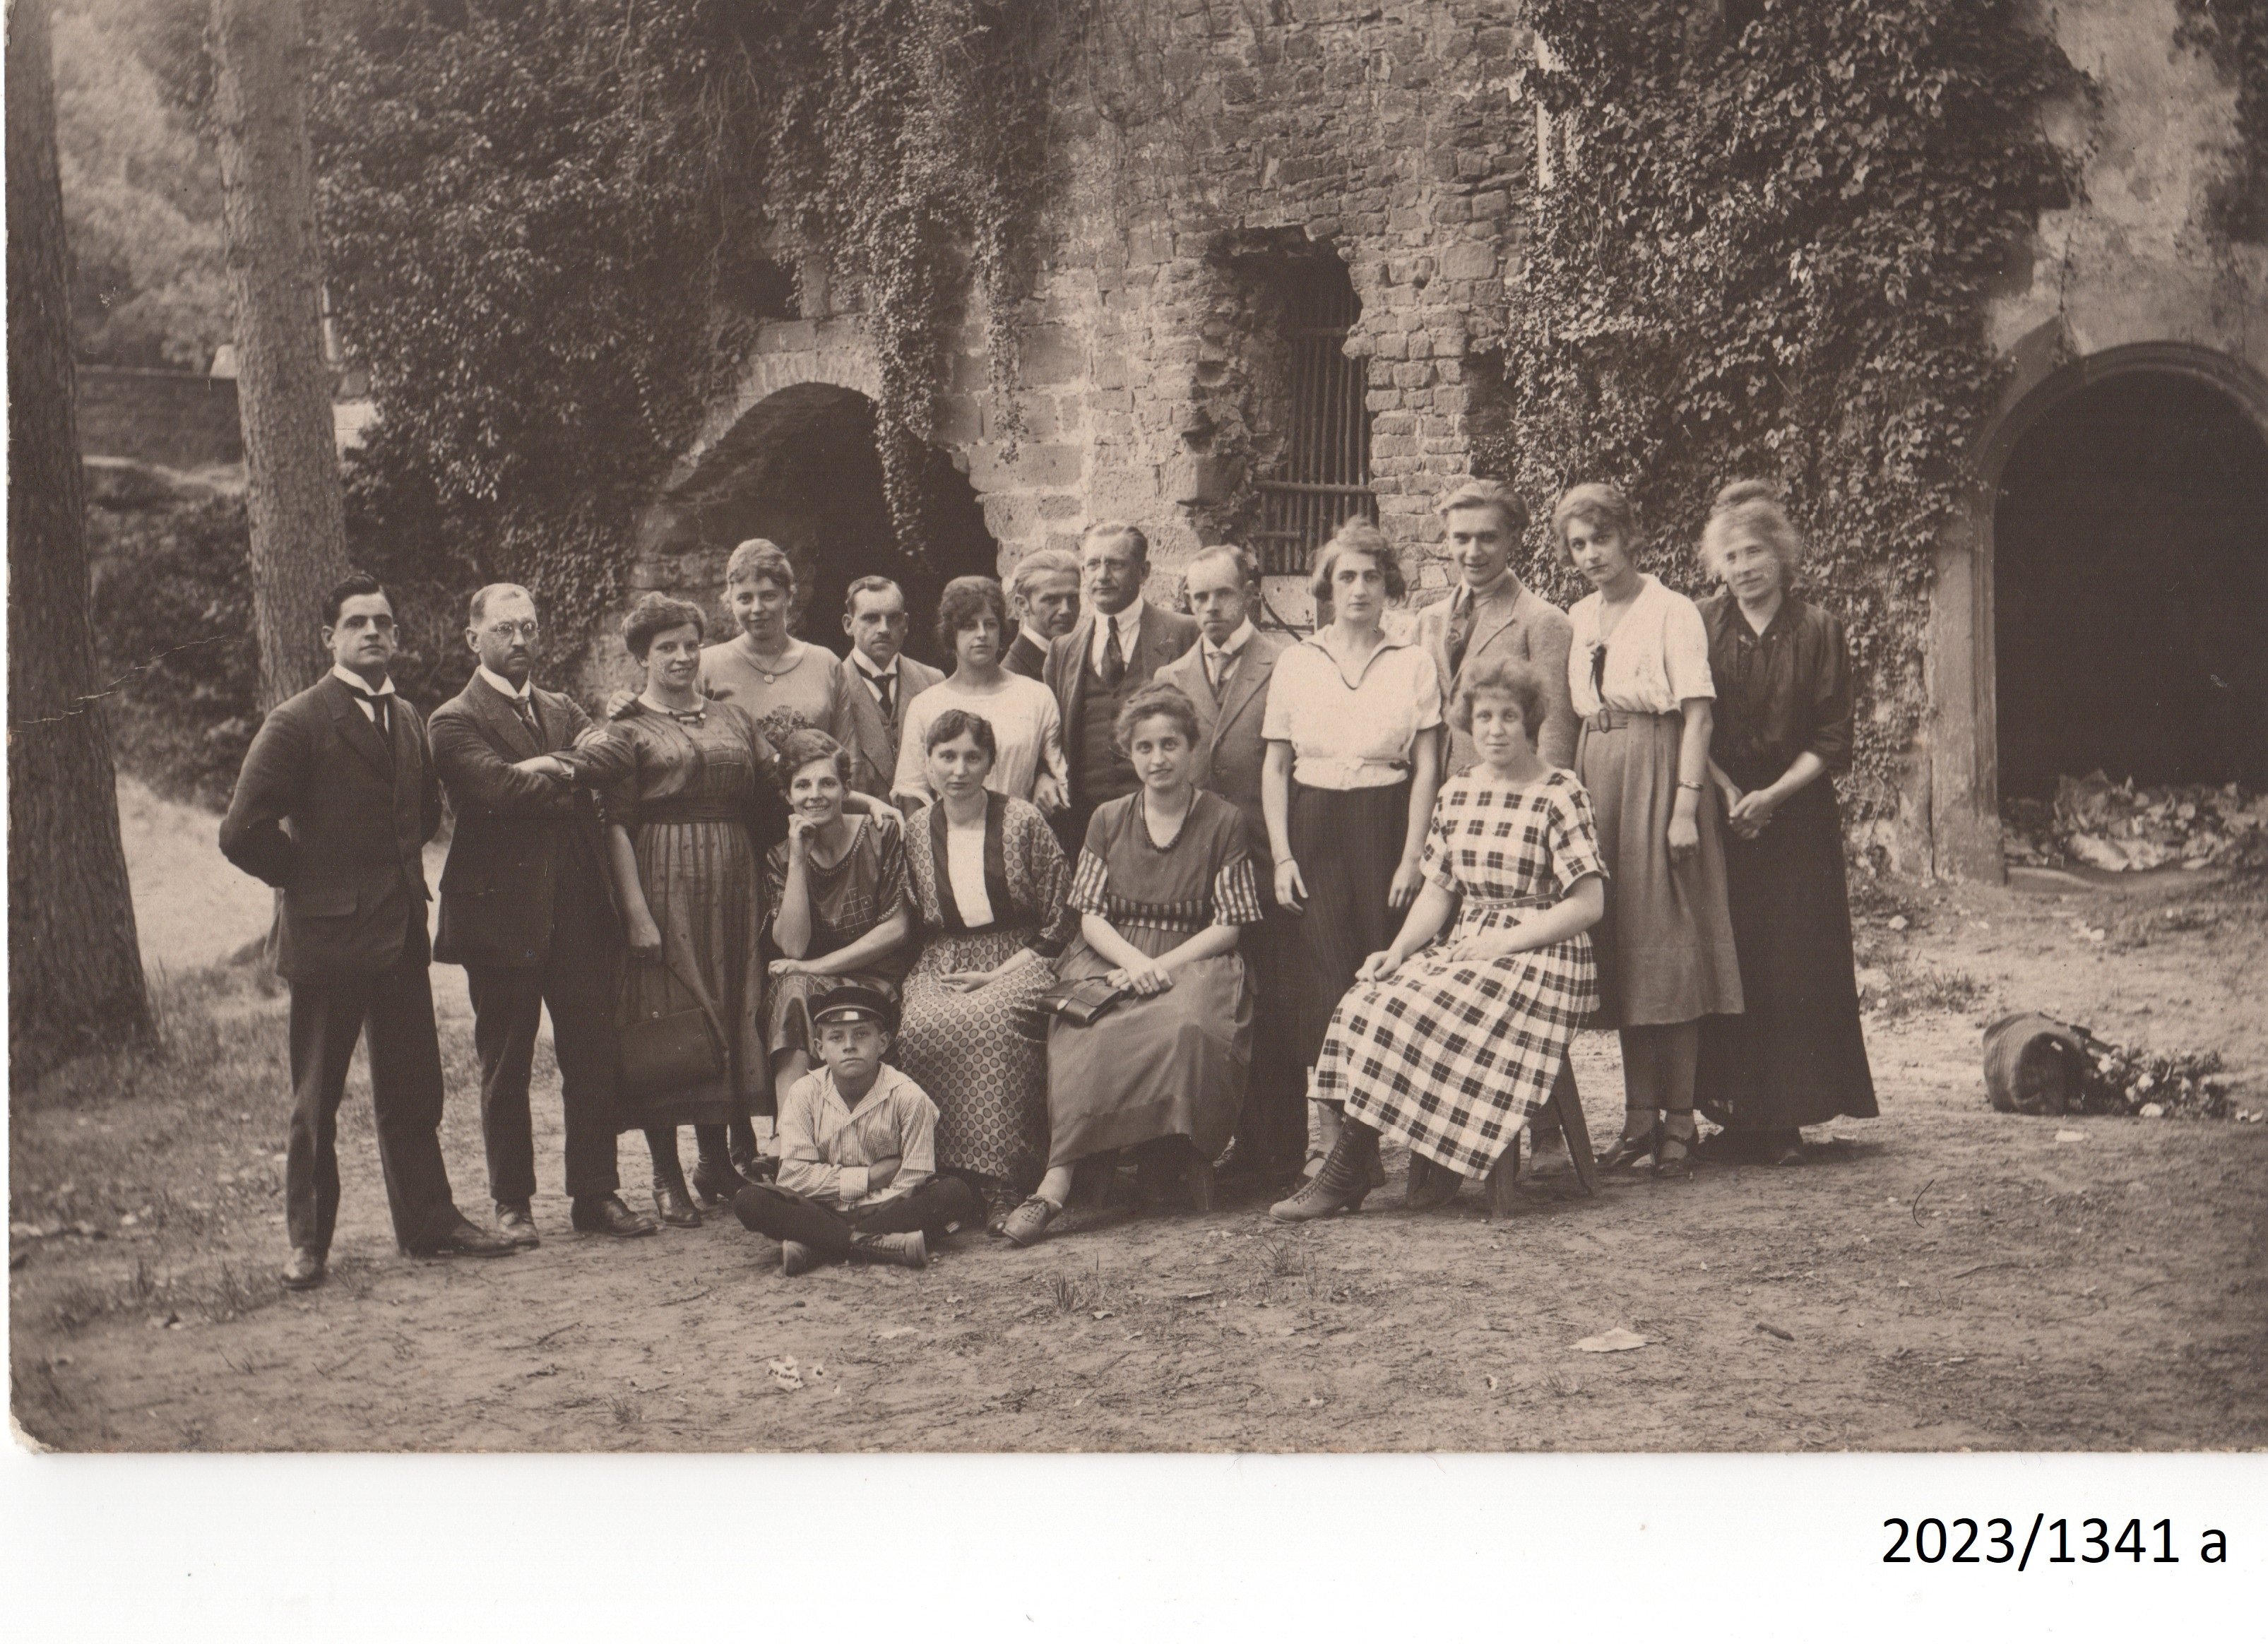 Hardenburg, Rosa Maas und "Sponsoren" der ersten Sommerfestspiele, um 1909 (Stadtmuseum Bad Dürkheim im Kulturzentrum Haus Catoir CC BY-NC-SA)